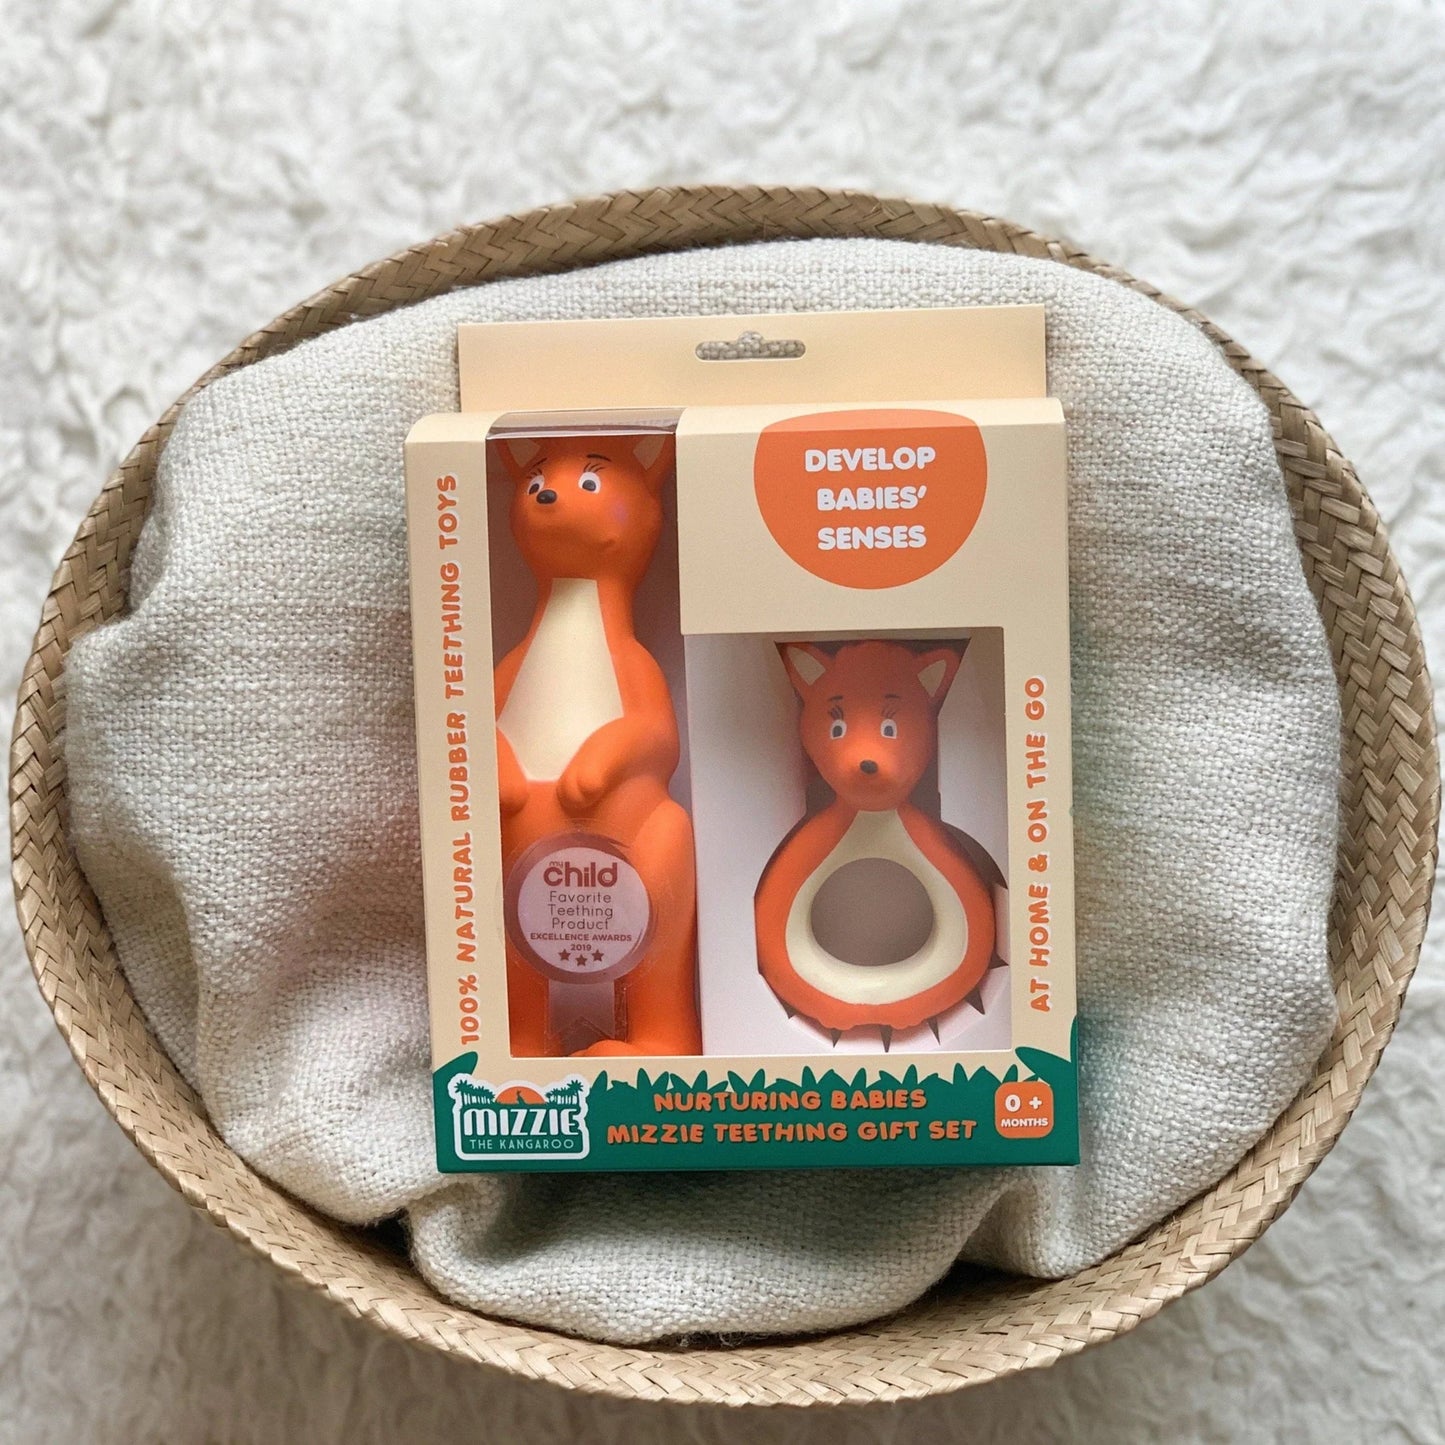 Nurturing Babies Mizzie Teething Gift Set